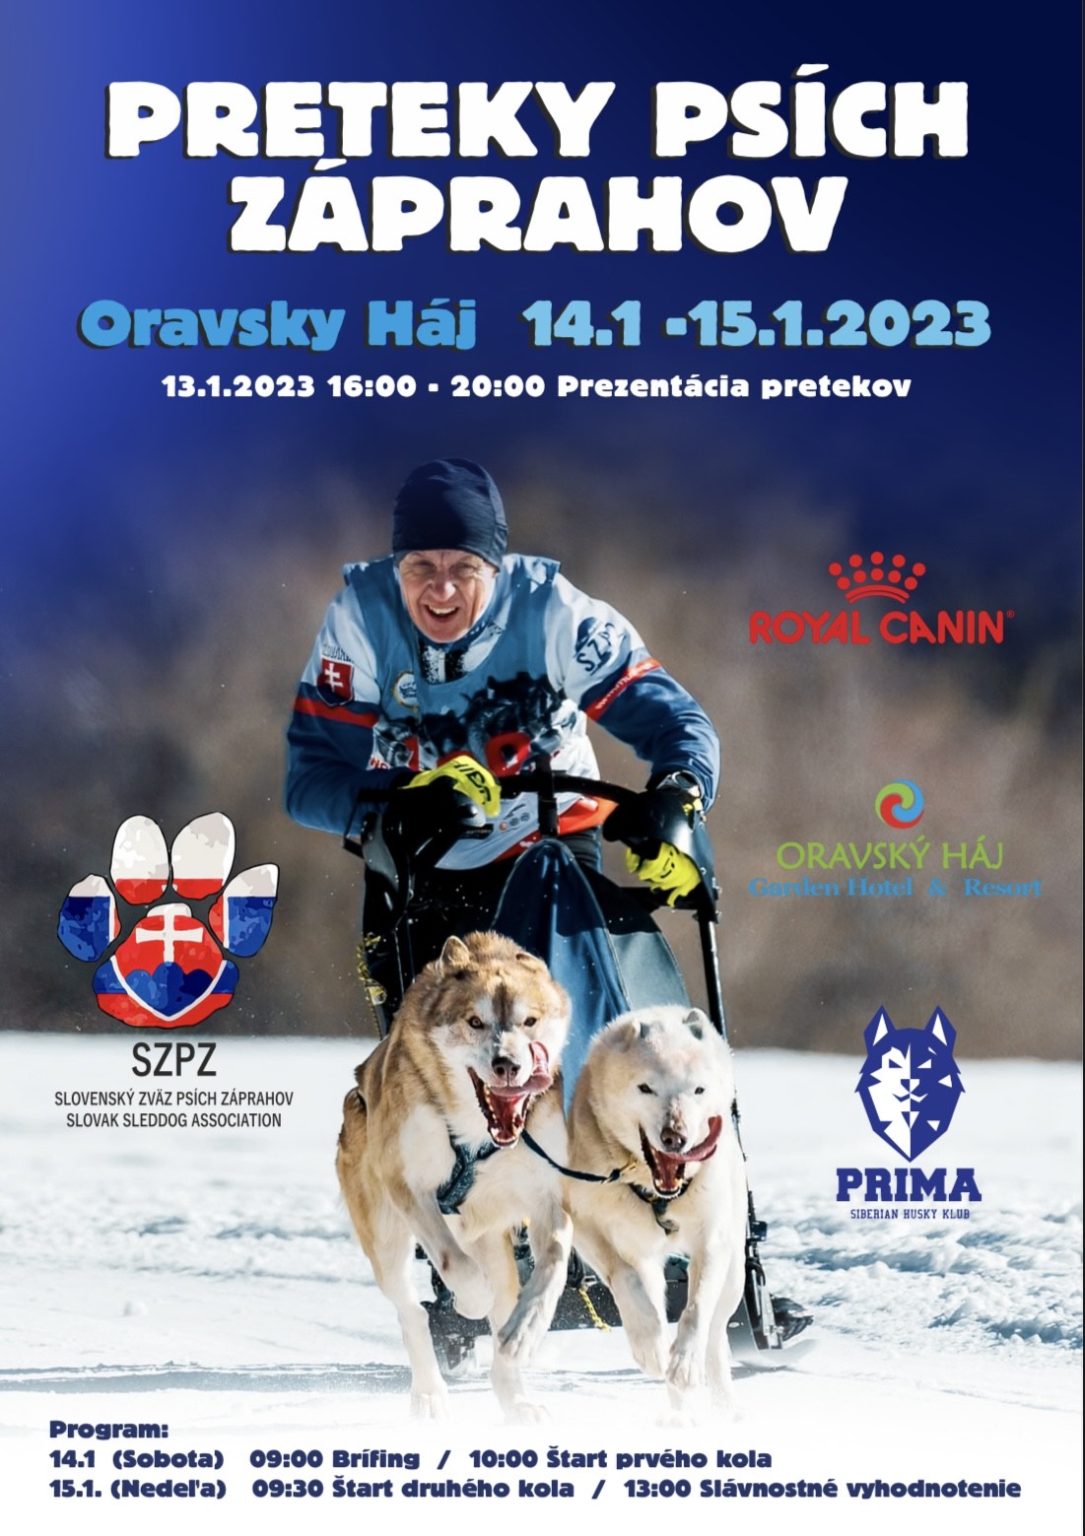 PRELOŽENÉ NA neurčito - - - Preteky psích záprahov 2023 Oravský Háj - 1. ročník PRIMA Cup